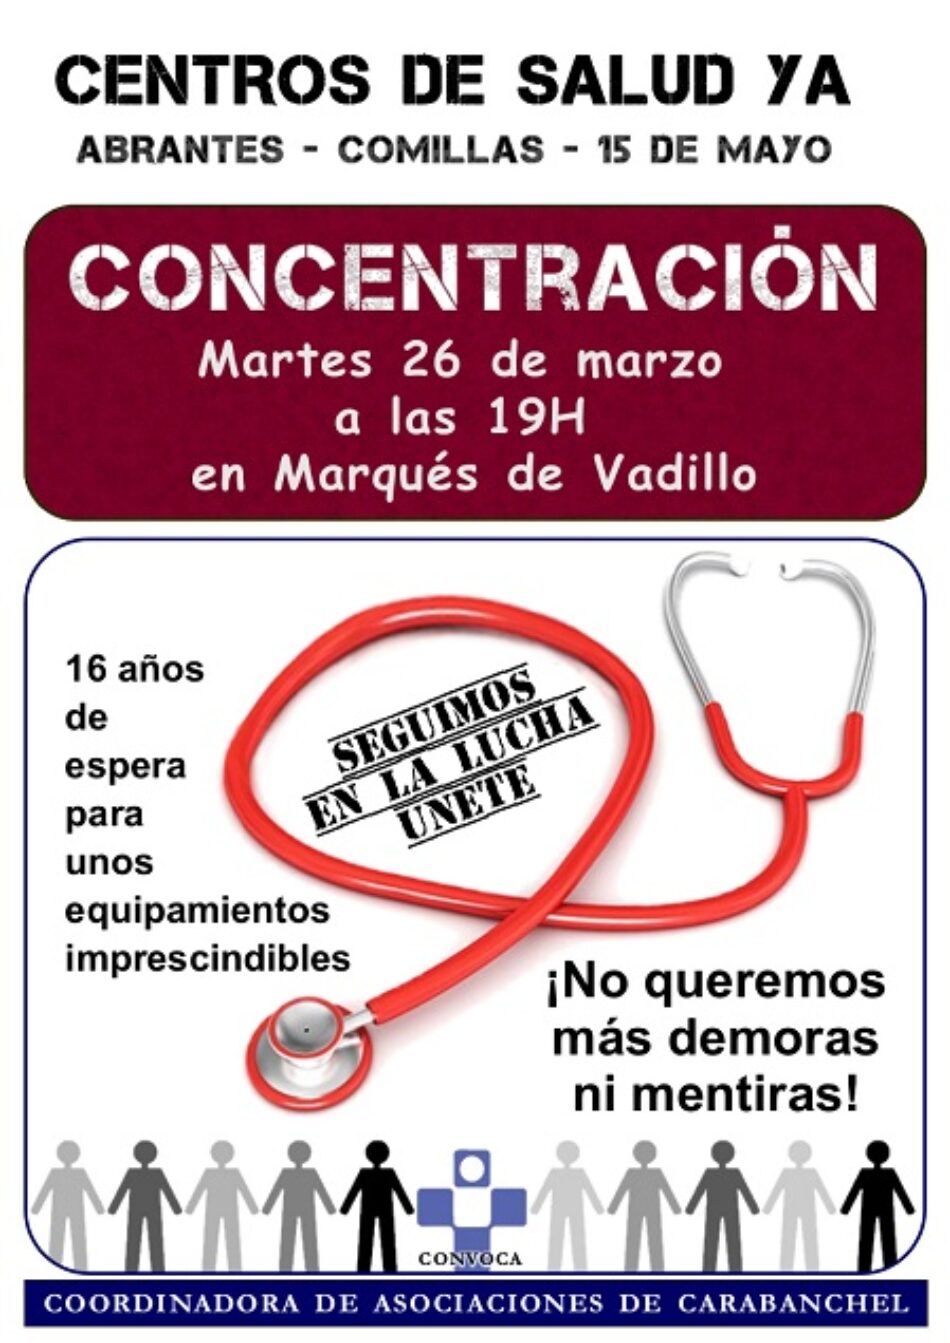 La vecindad de Carabanchel Bajo sale de nuevo a la calle para reclamar los tres centros de salud prometidos hace 16 años